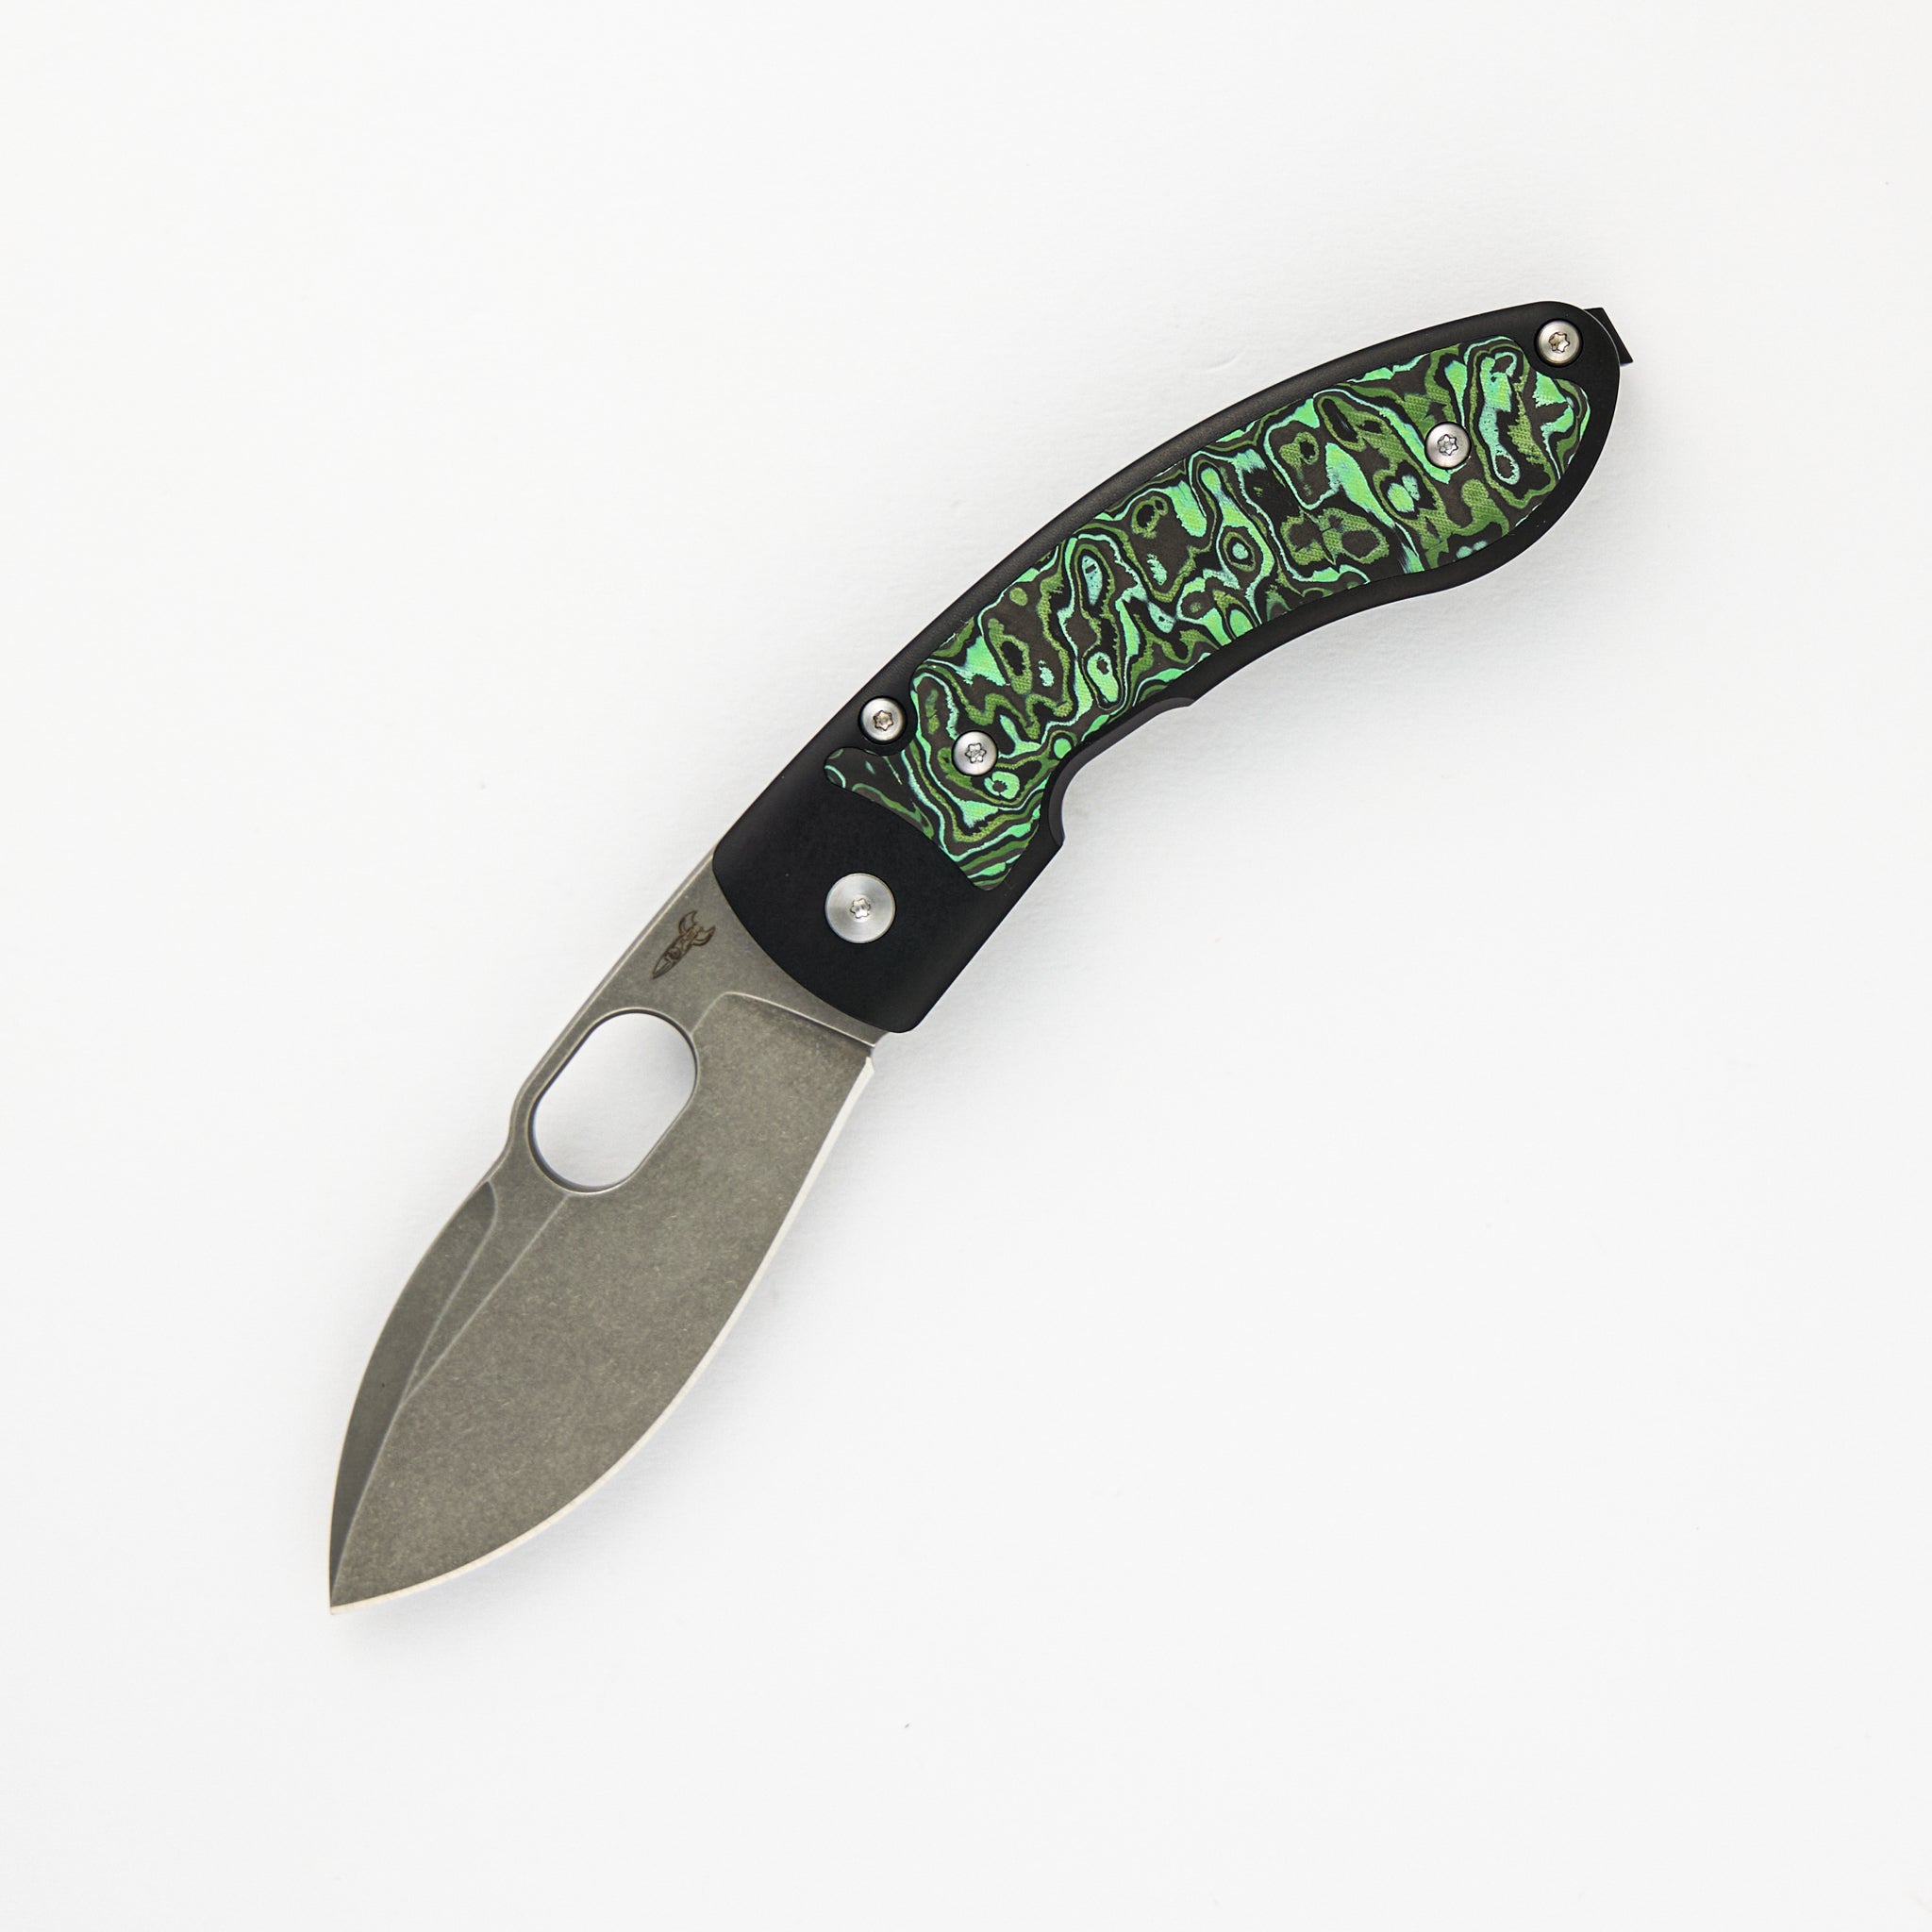 D Rocket Design Lumm Leaf (Style 10) – Green/Black Carbon Fiber Inlays – Stonewash S90V Blade